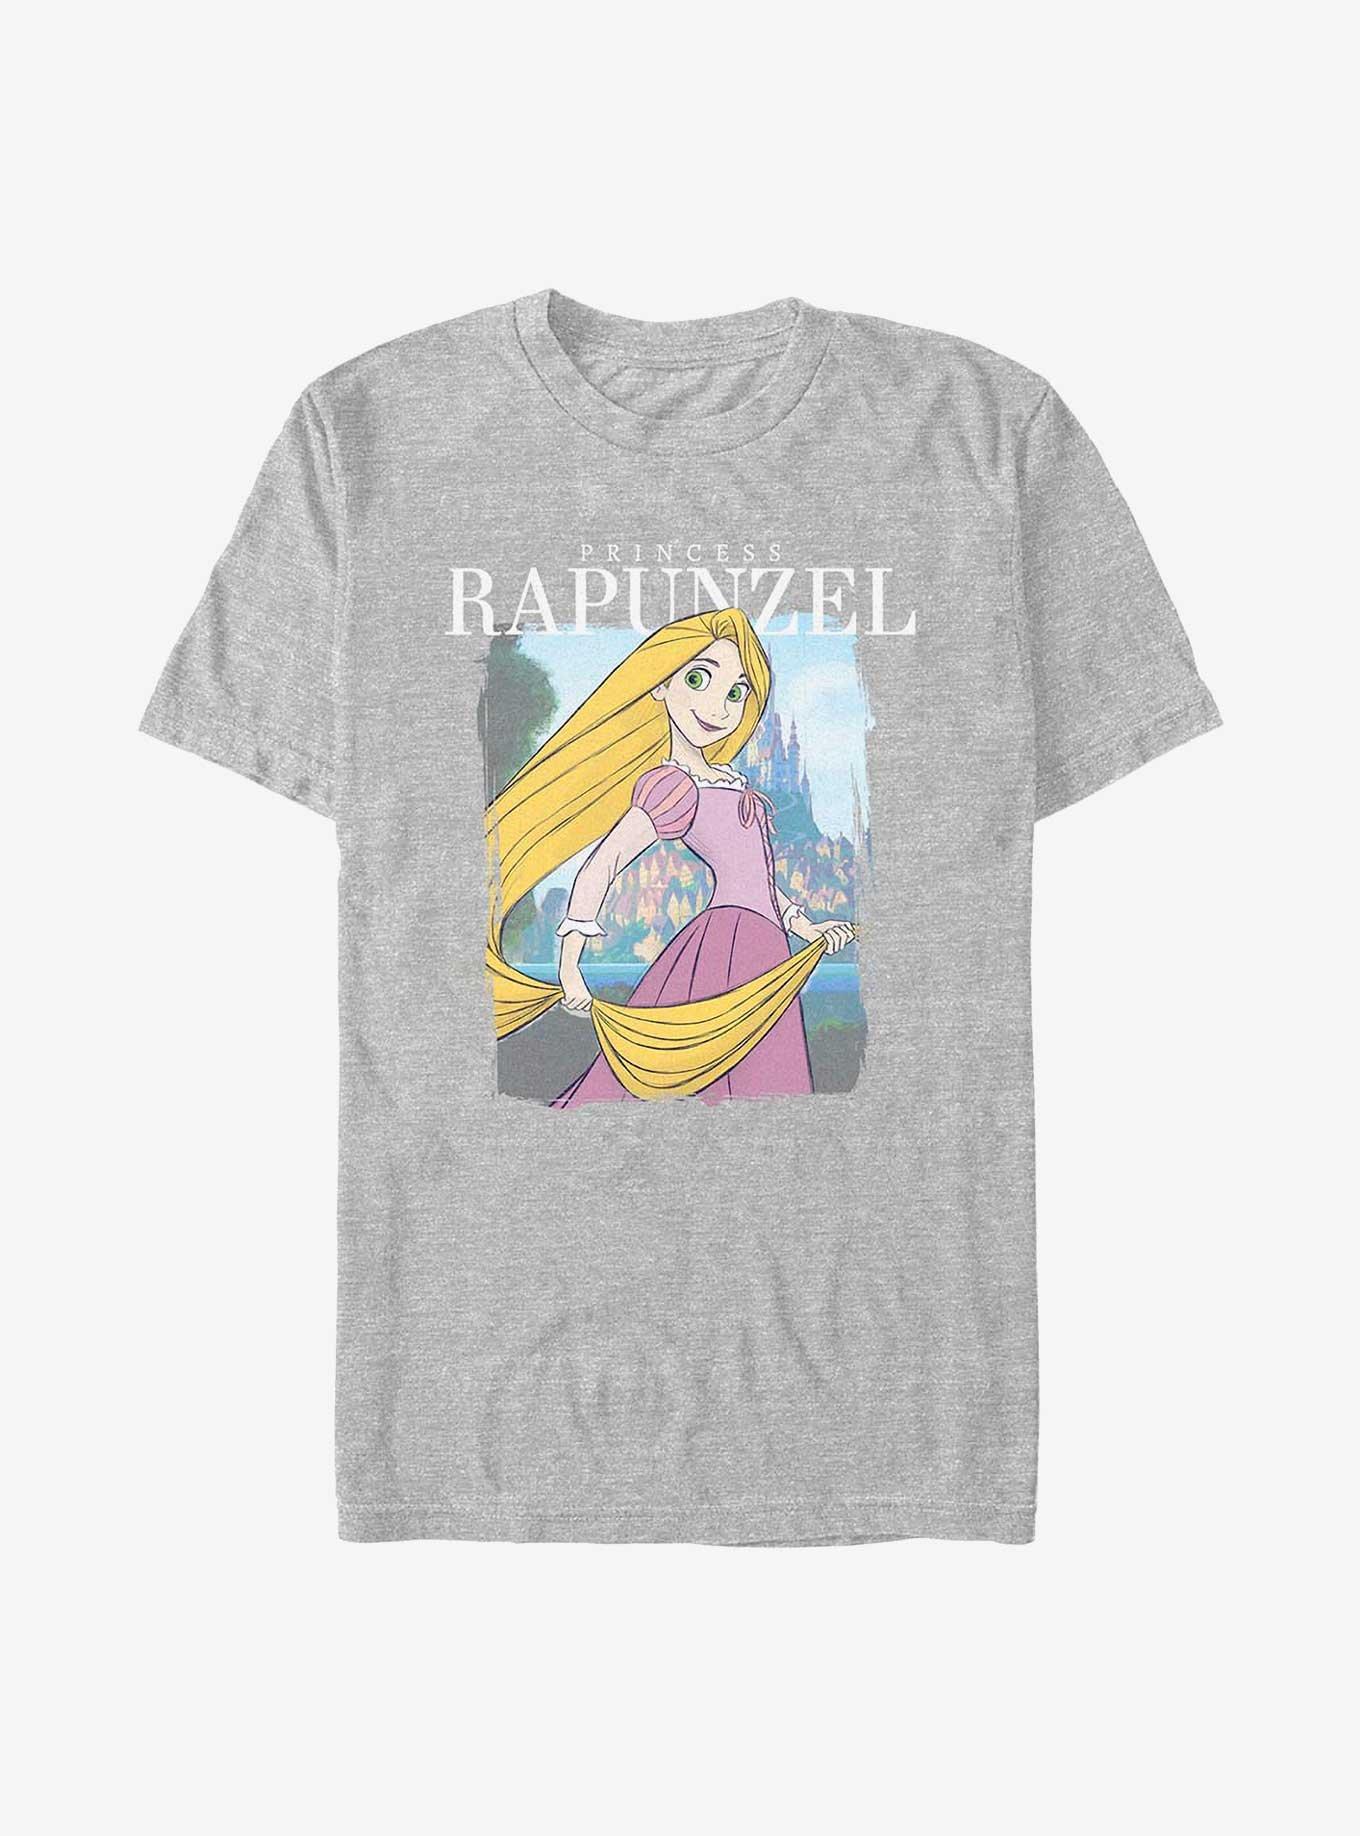 Disney Tangled Princess Rapunzel T-Shirt